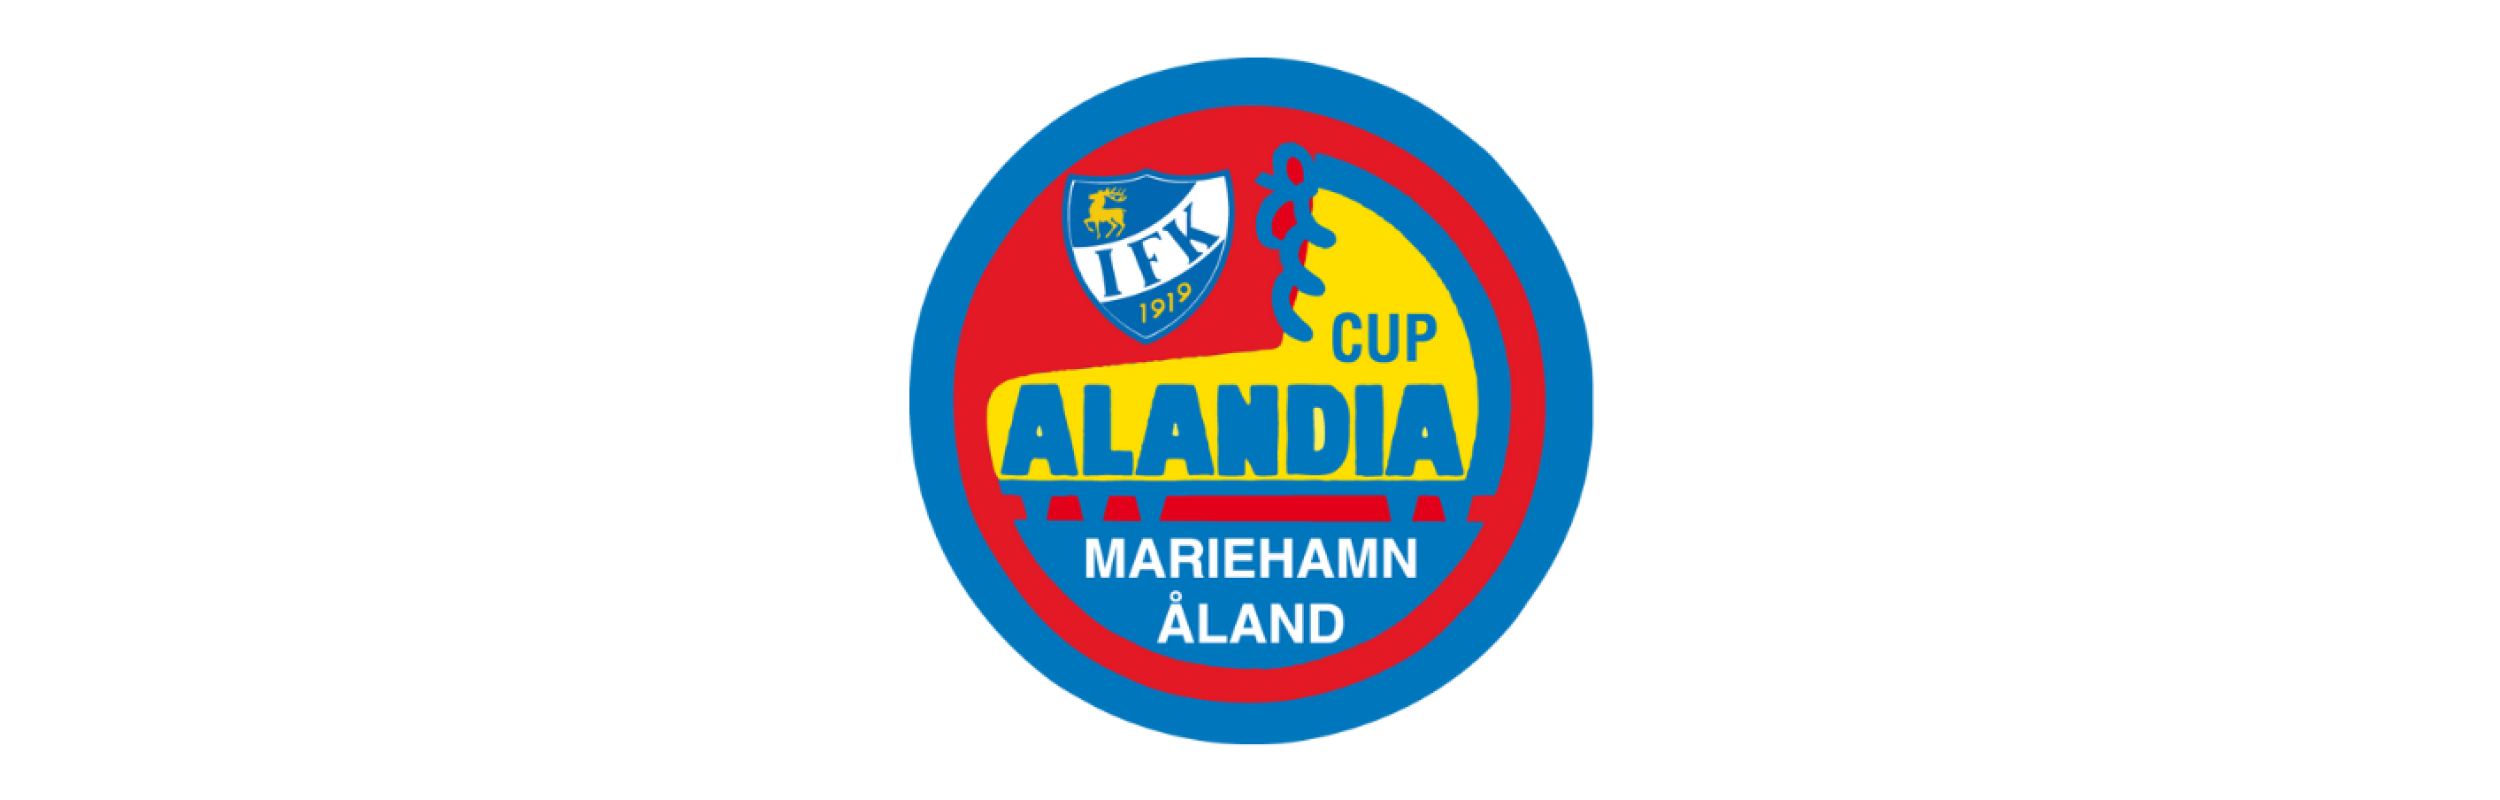 Alandia cup logo nyhet